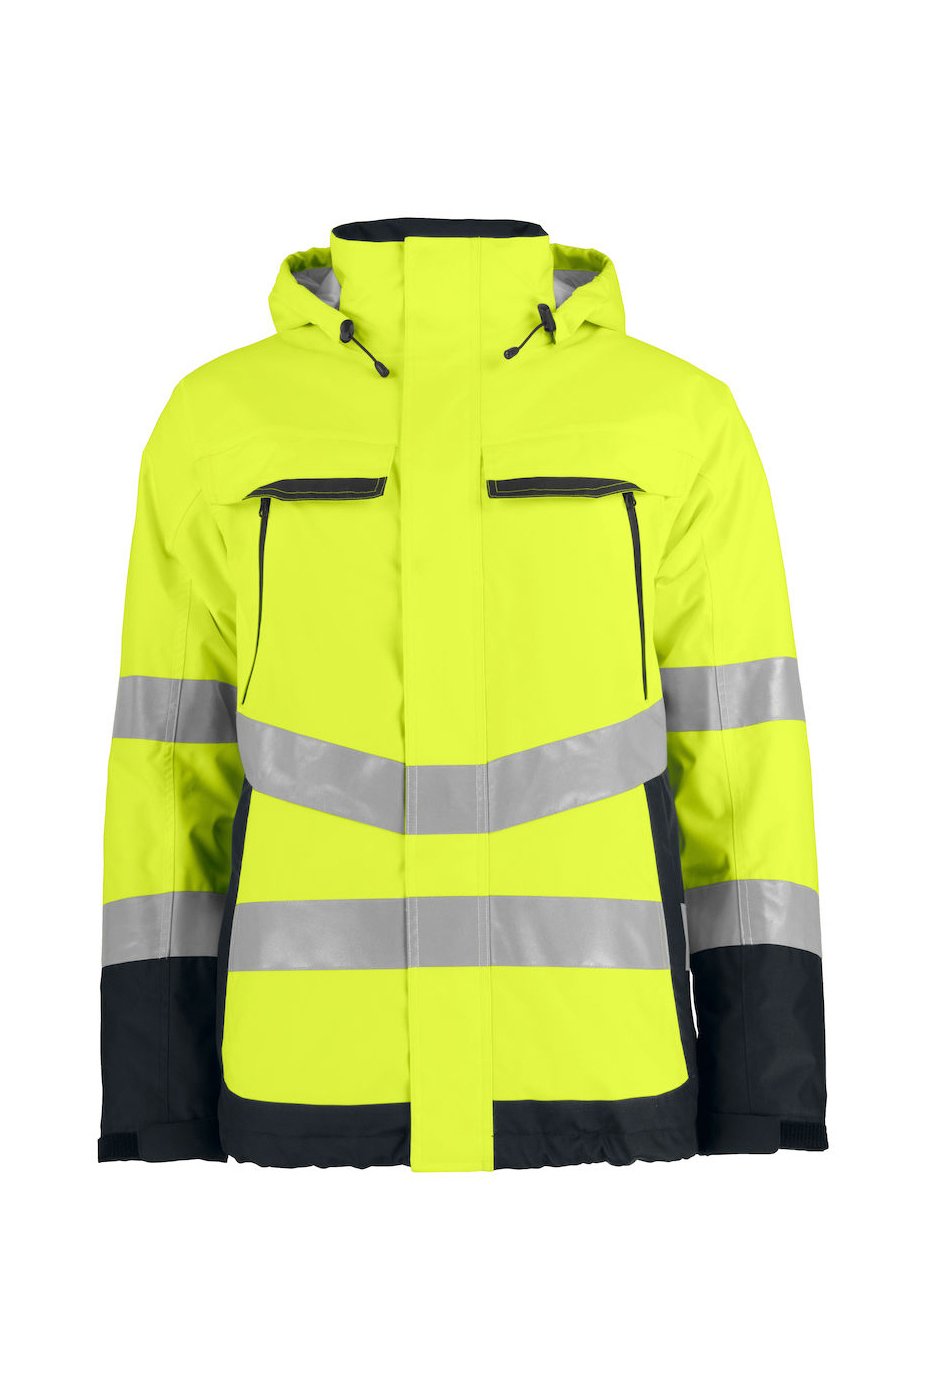 Gefütterte wind- und wasserdichte Warnschutz-Jacke EN ISO 20471 Klasse 3, ISO 343, gelb/marineblau